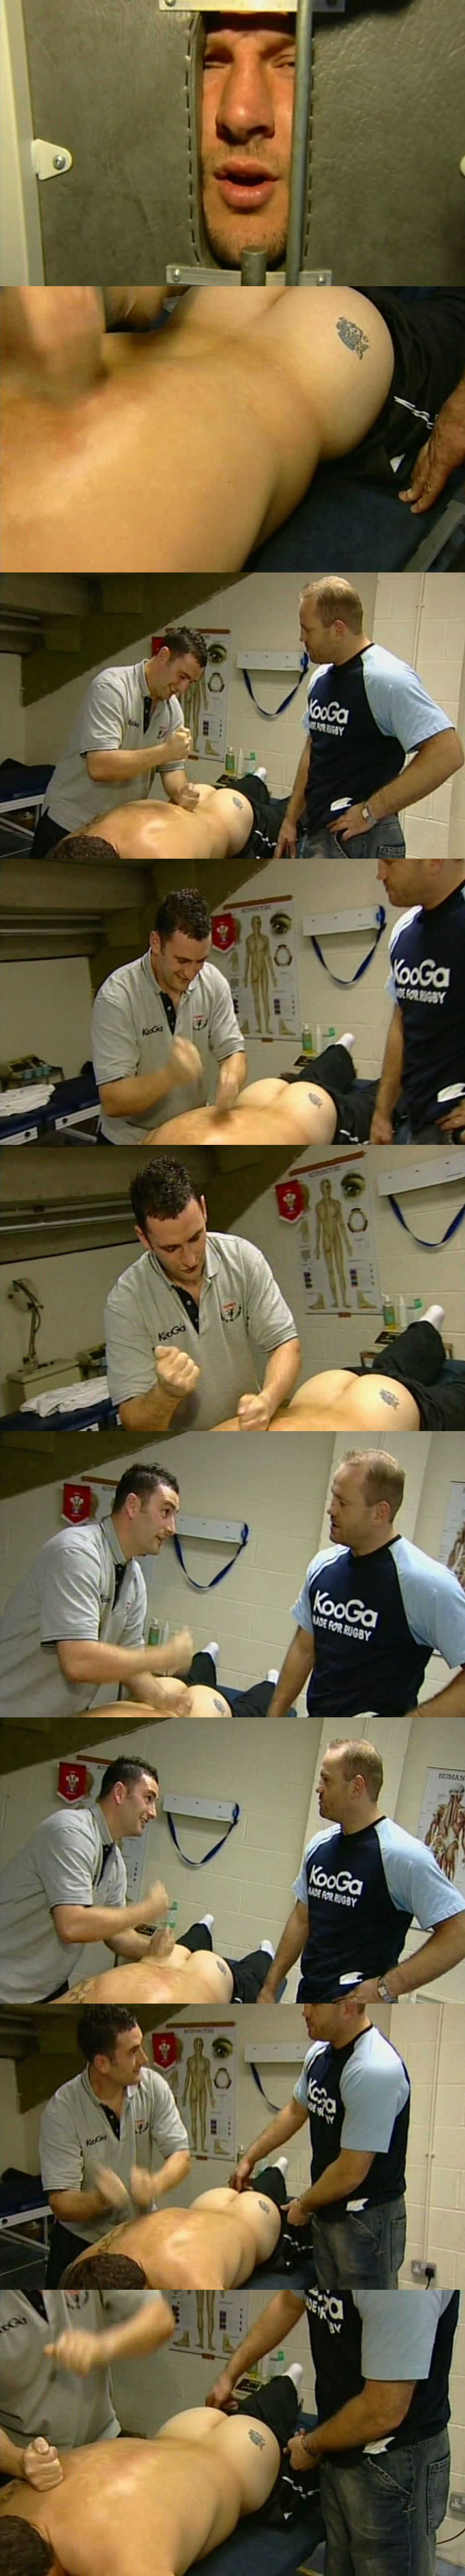 Barrie Mcdermott ass exposed during massage